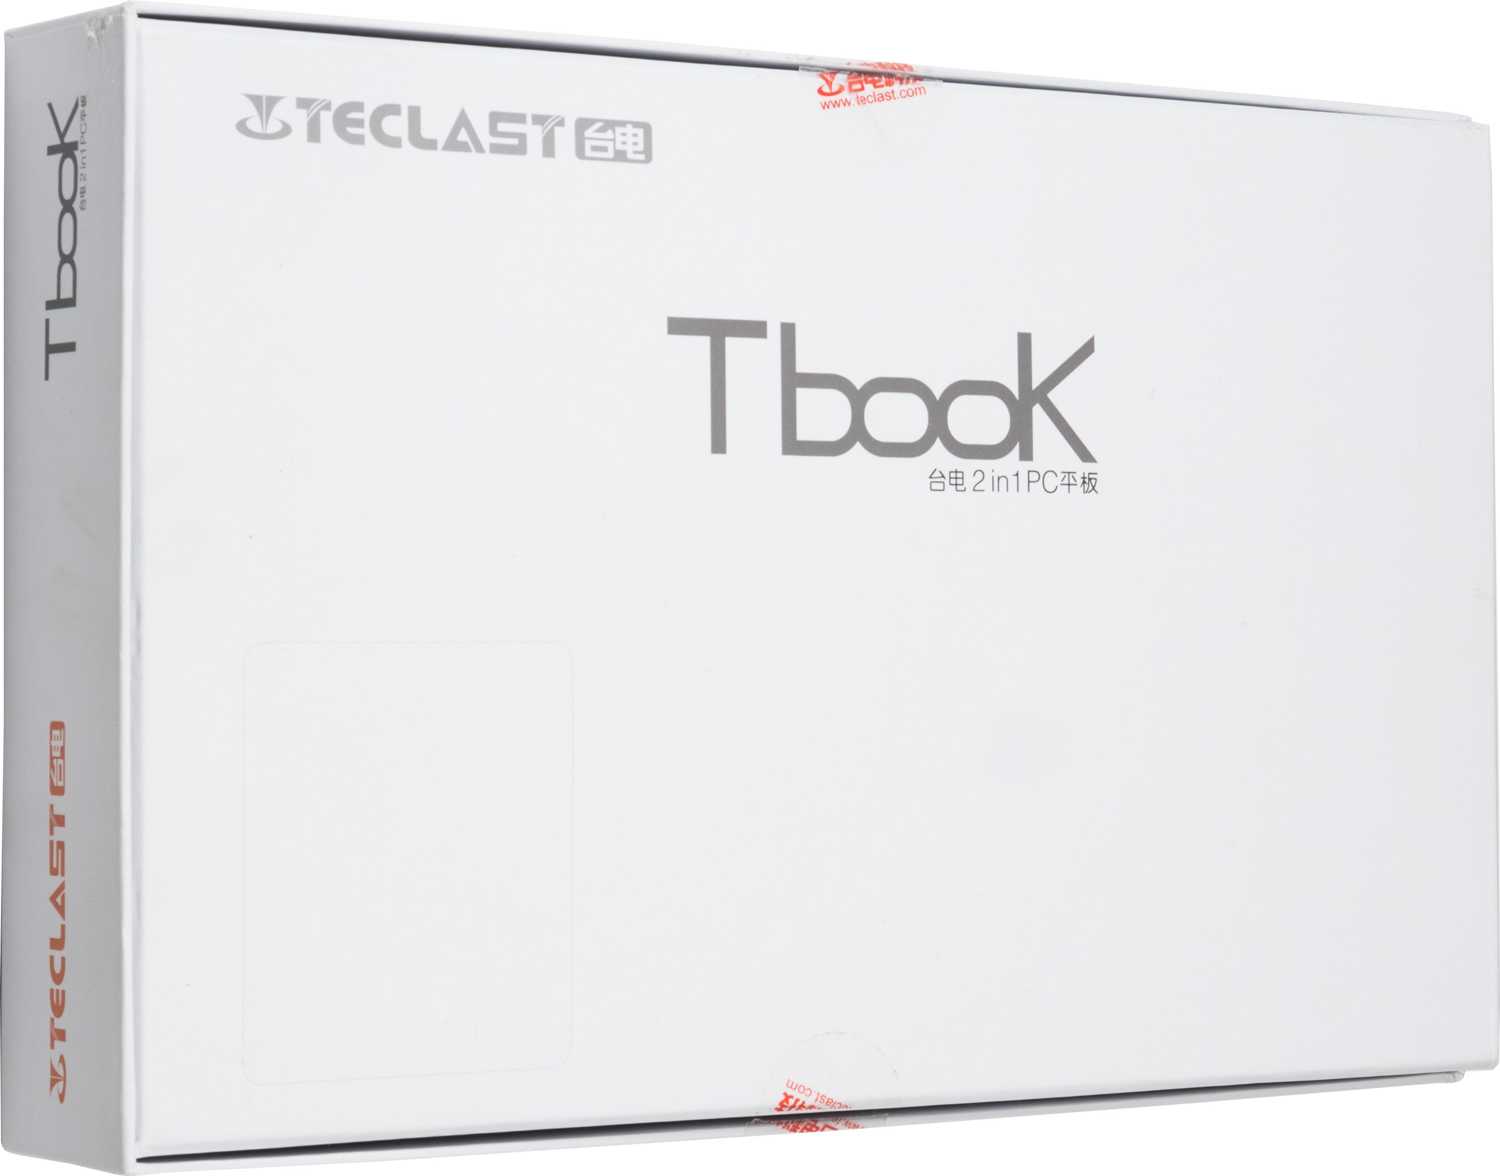 Teclast tbook 16 pro - отзывы и подробные технические характеристики